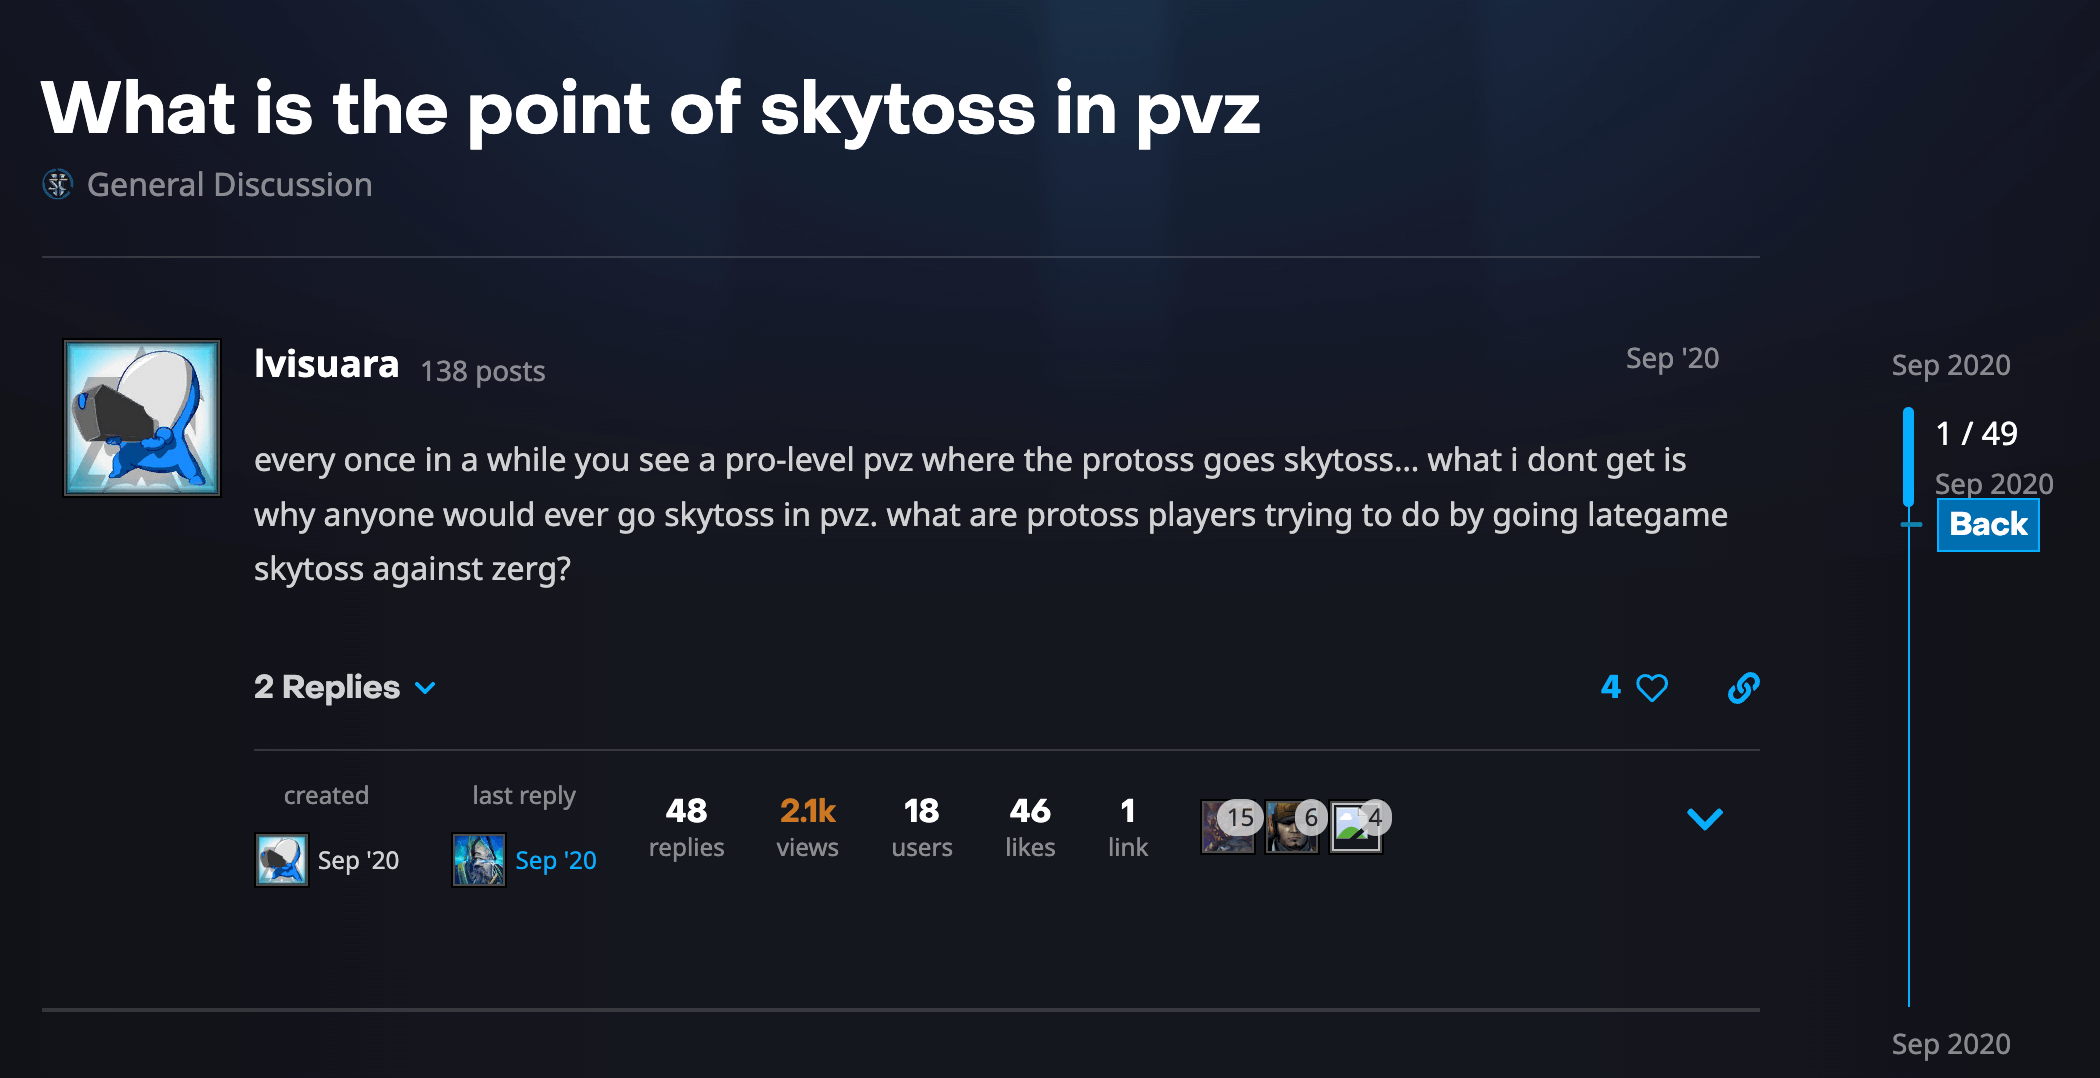 An SC2 player discussing skytoss's merits in Protoss vs. Zerg matchups